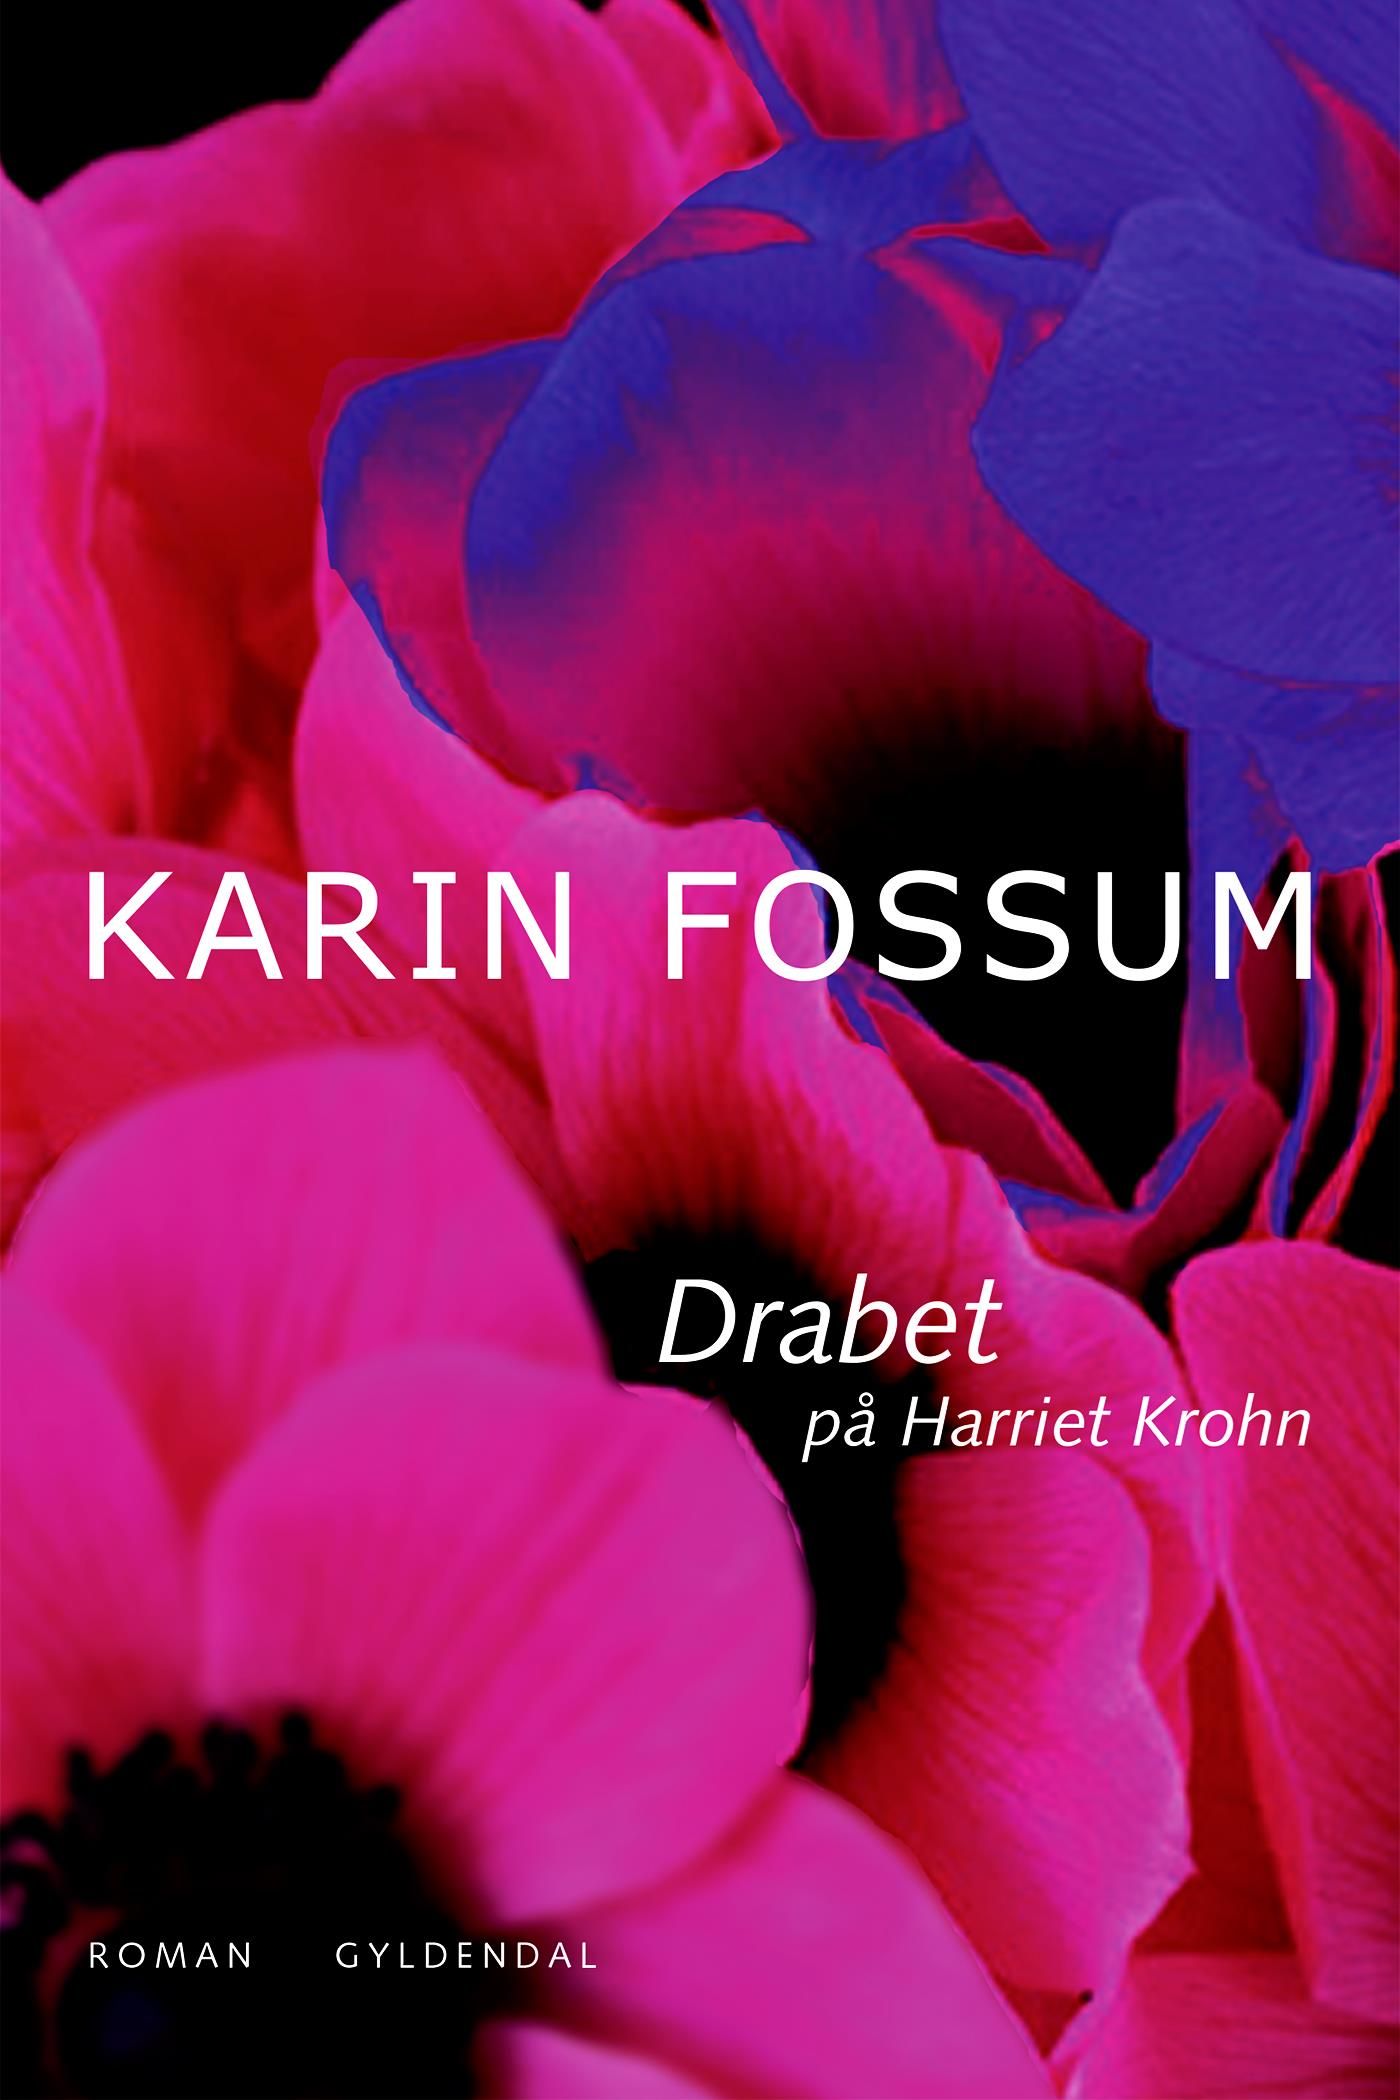 Drabet på Harriet Krohn, e-bok av Karin Fossum